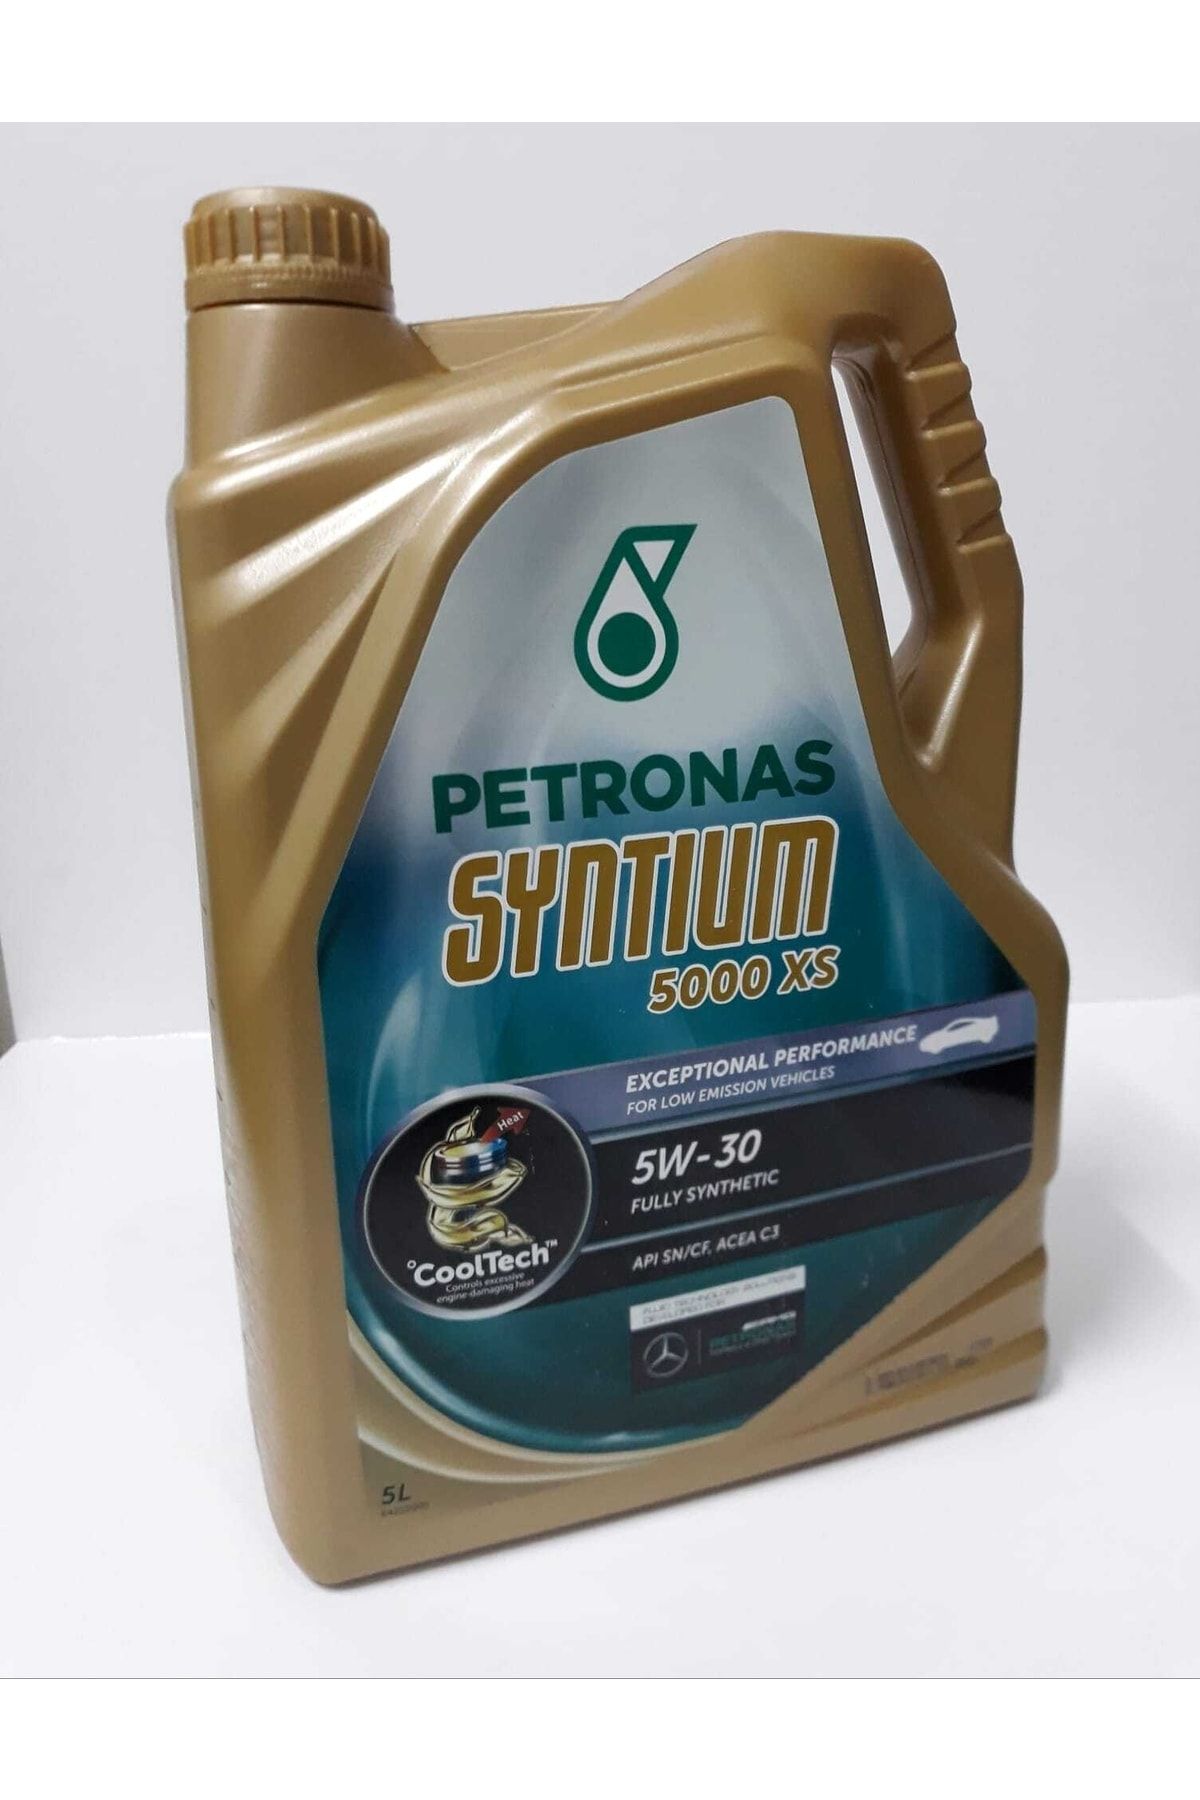 Petronas Syntium 5000 Xs 5w30 5lt Fully Synthetıc